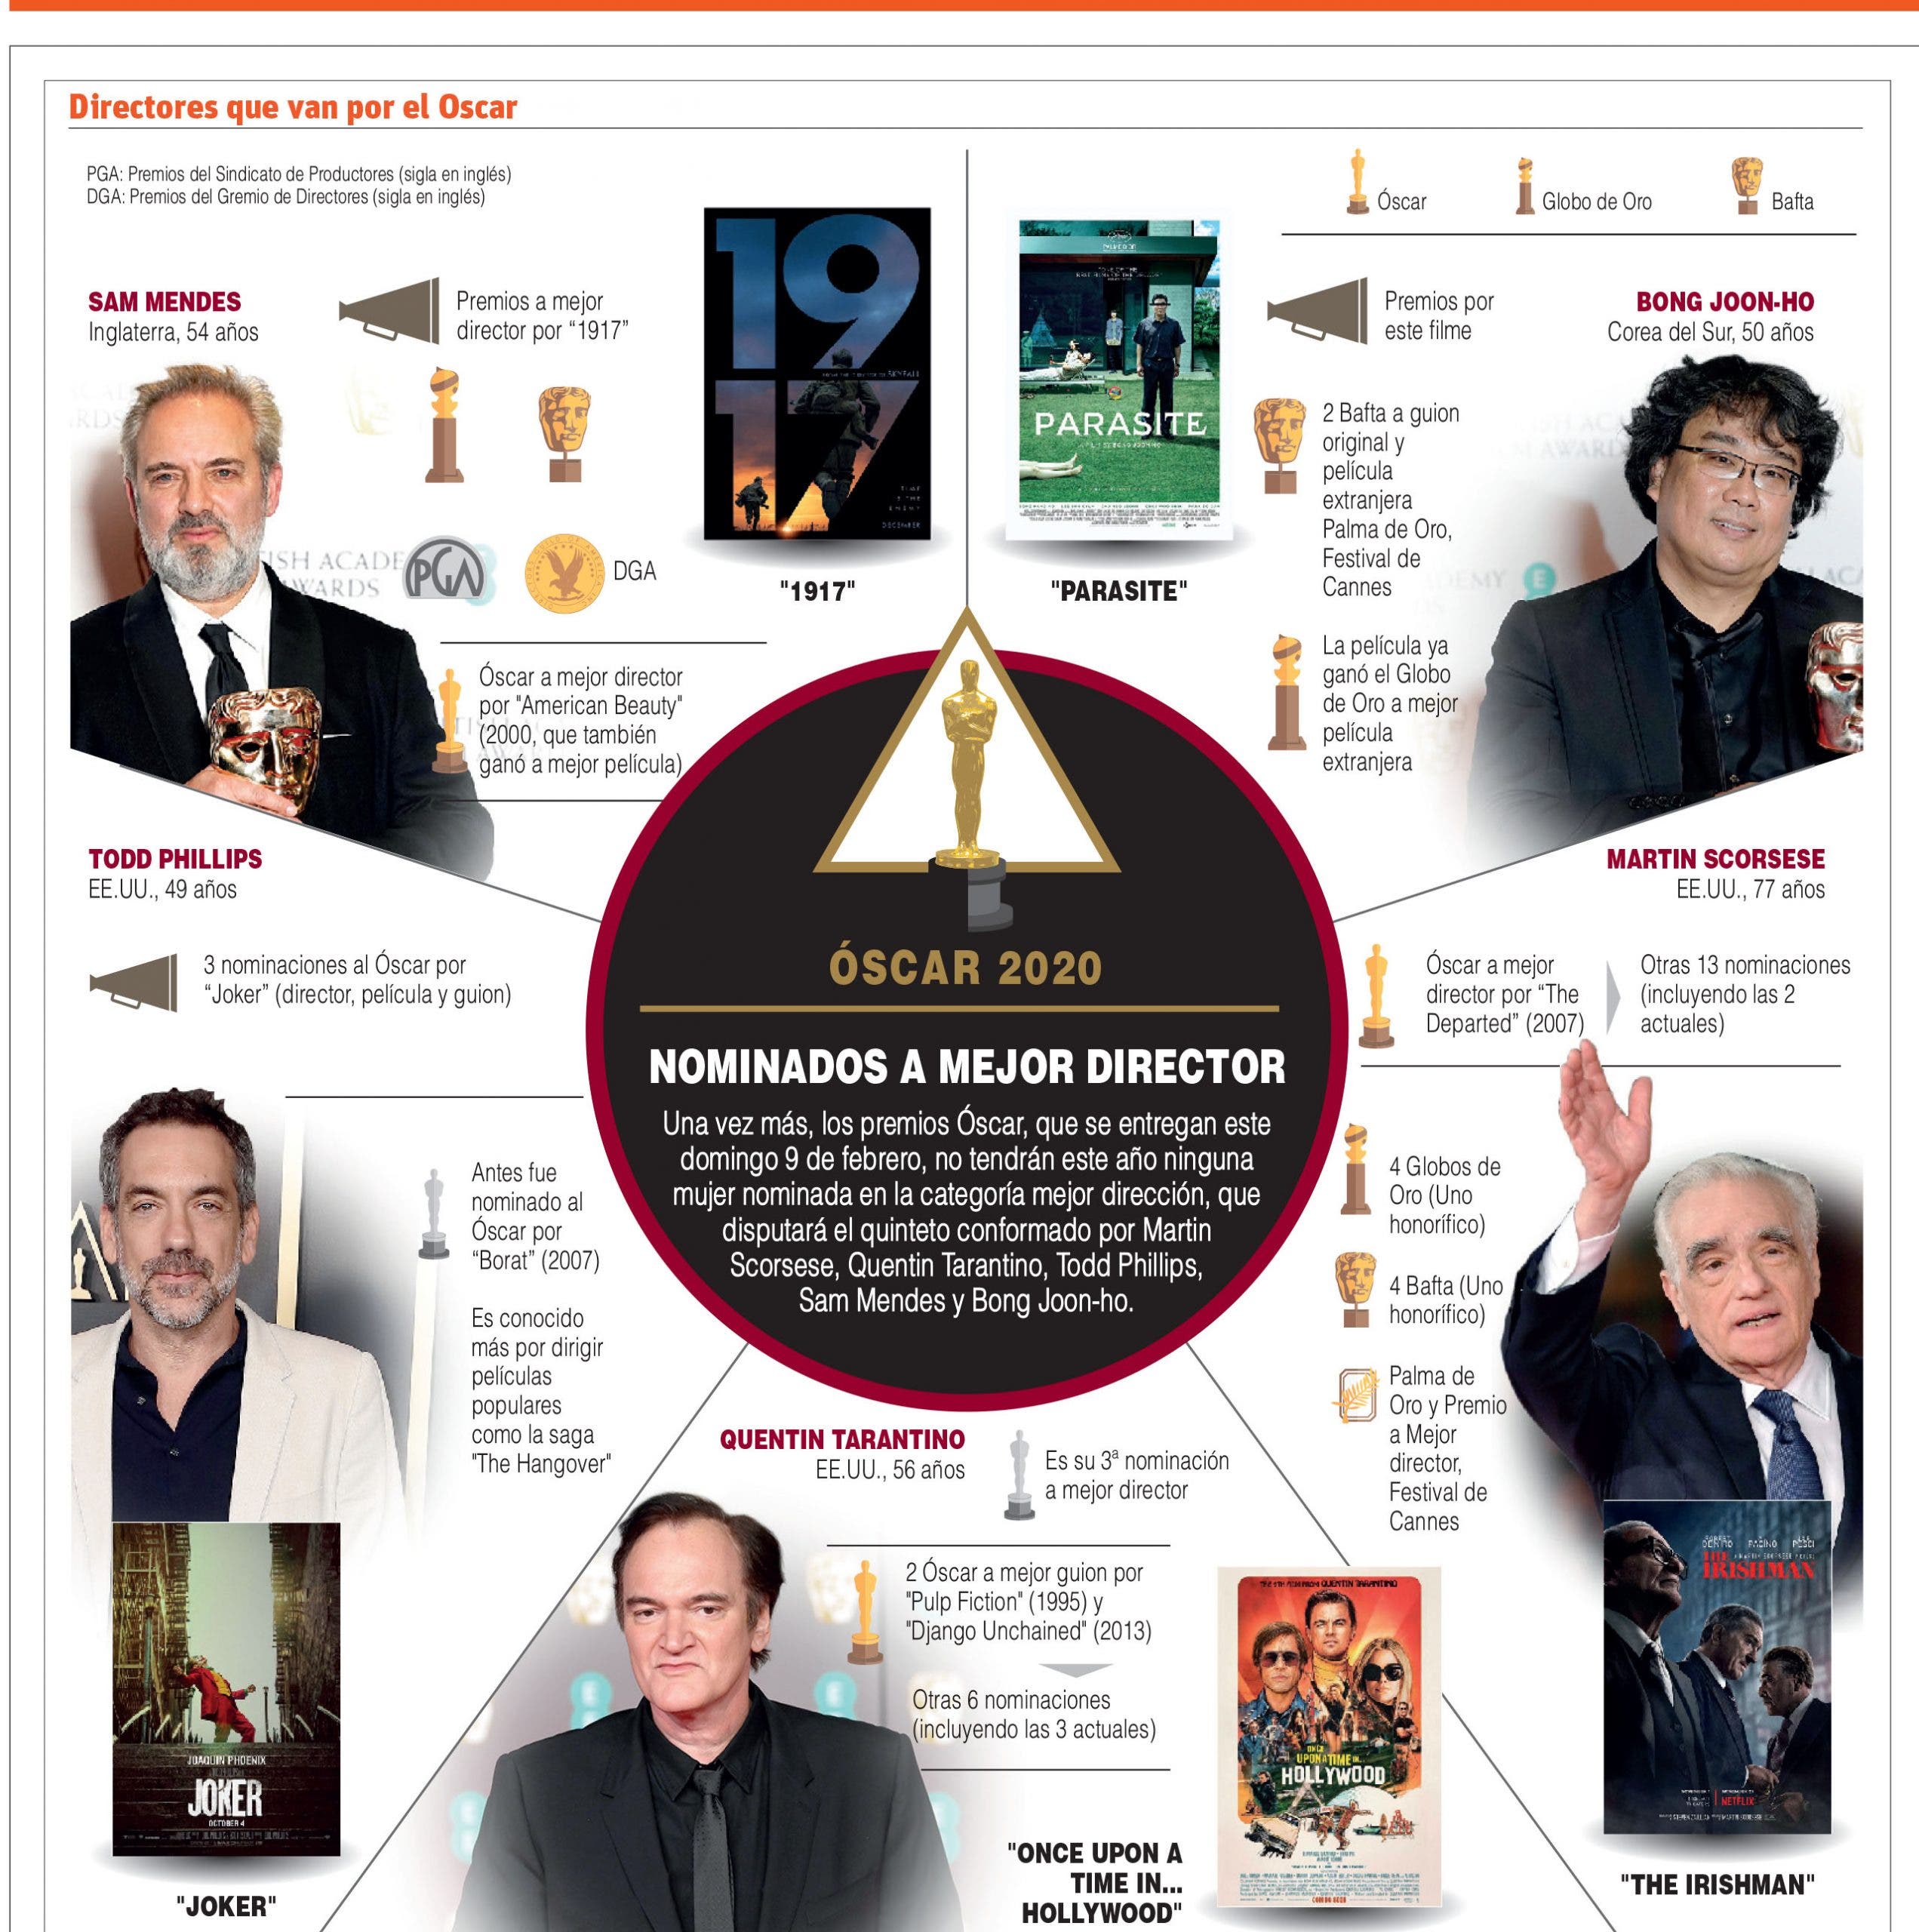 Oscar 2020: Ellos son los nominados a mejor director